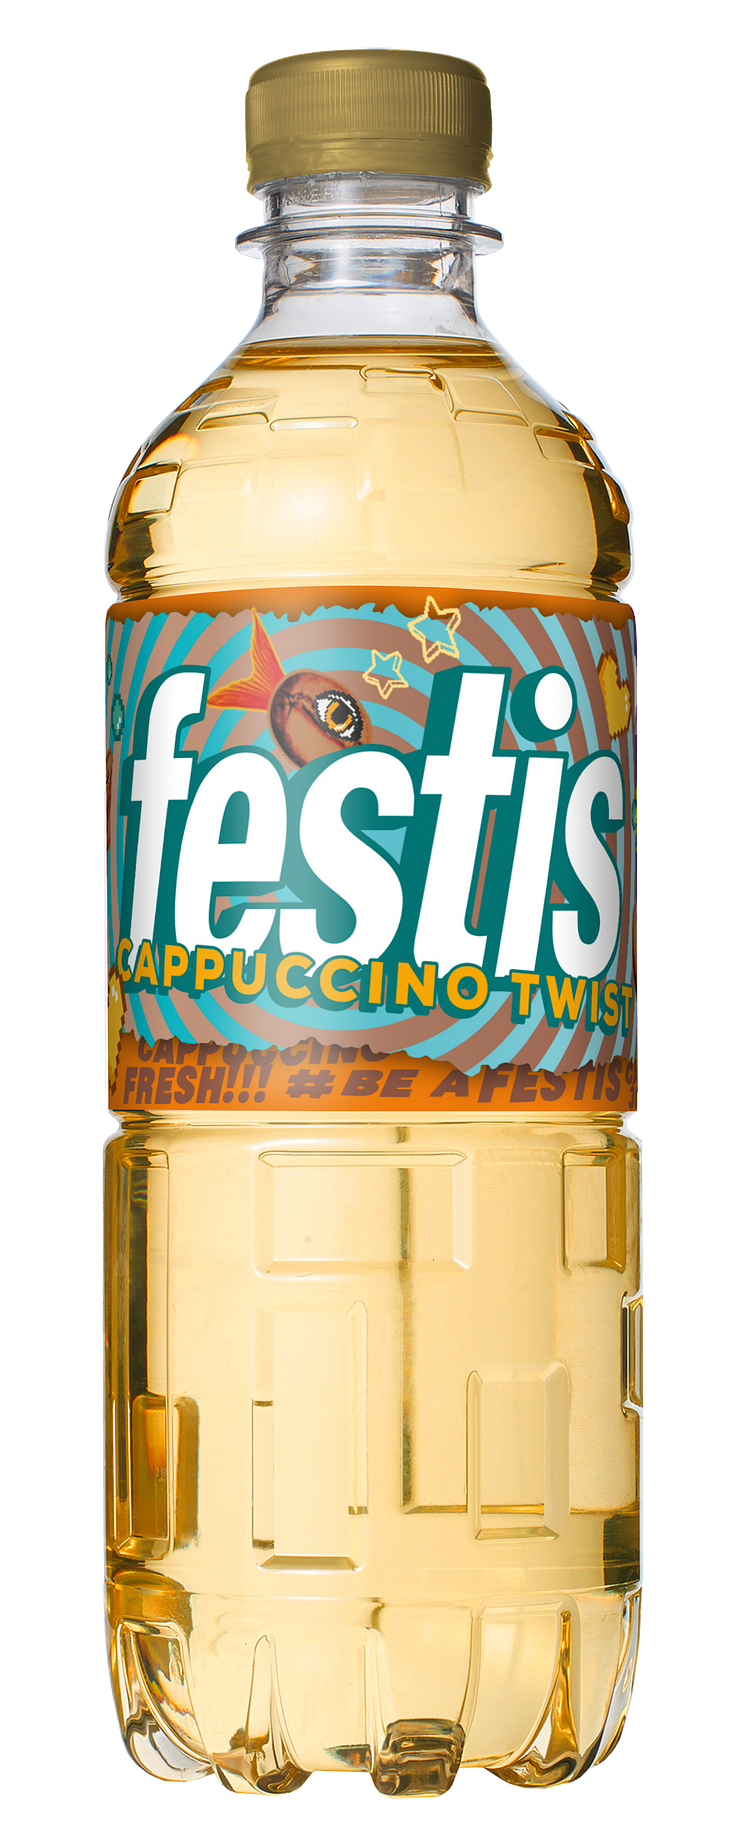 Festis - Cappucino Twist_frilagd